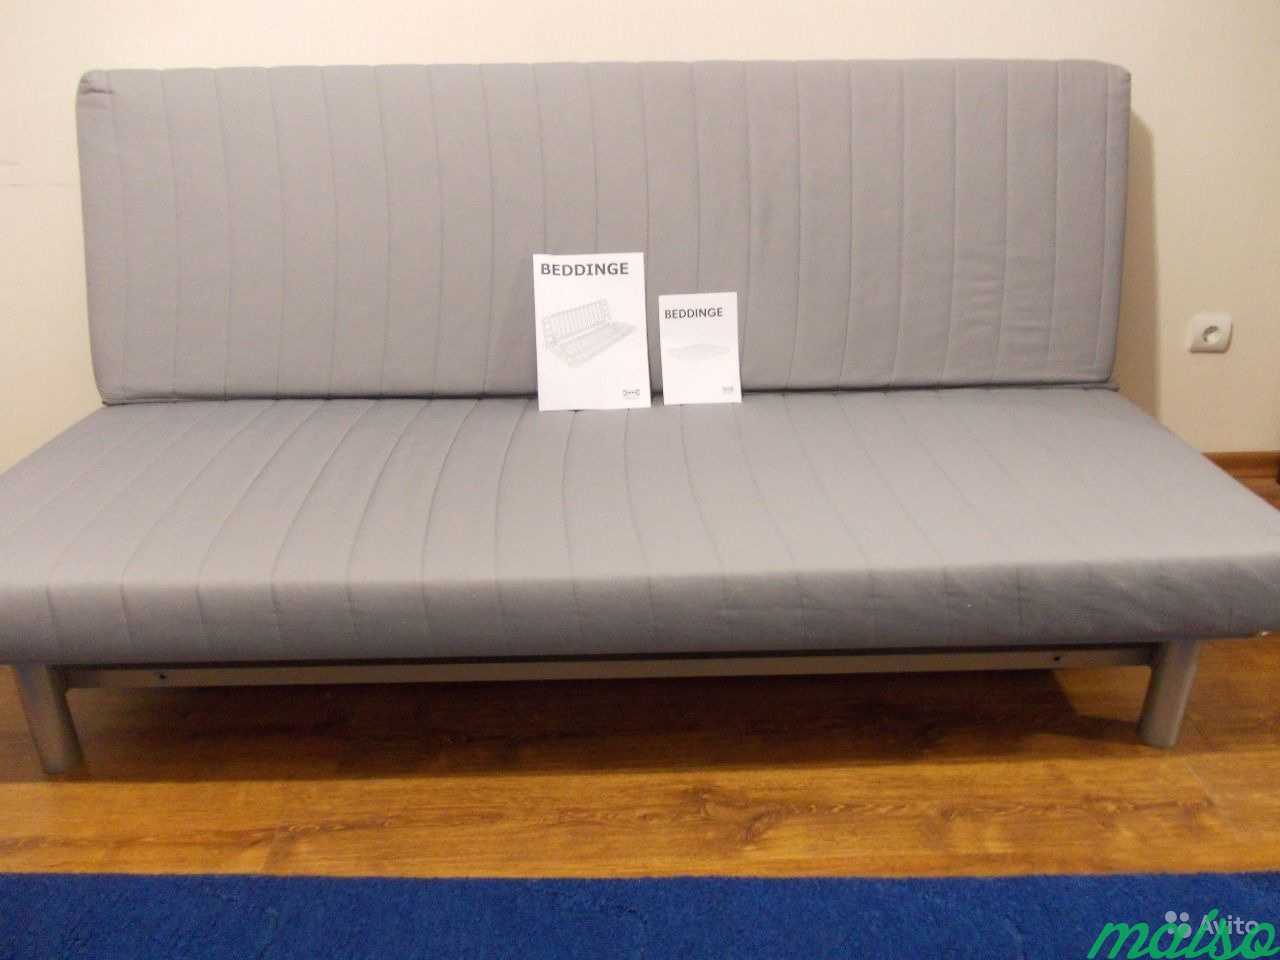 Абсолютно новый диван IKEA бединге. Довезу, соберу в Москве. Фото 1